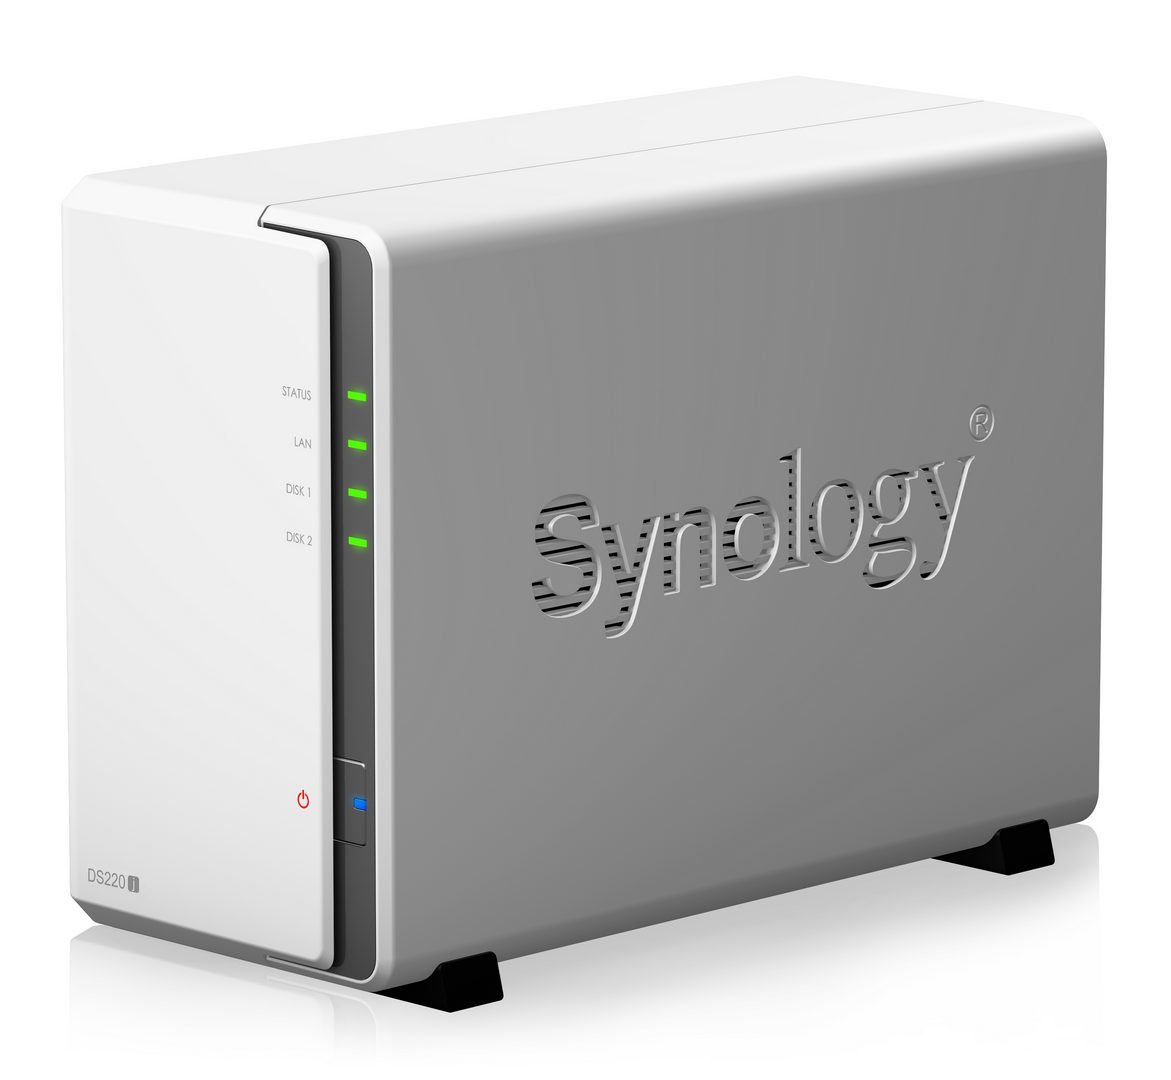 Synology เปิดตัว DiskStation DS220j สร้างคลาวด์ส่วนตัวพร้อมสำรองข้อมูลและการสตรีมมัลติมีเดียอย่างง่ายดาย